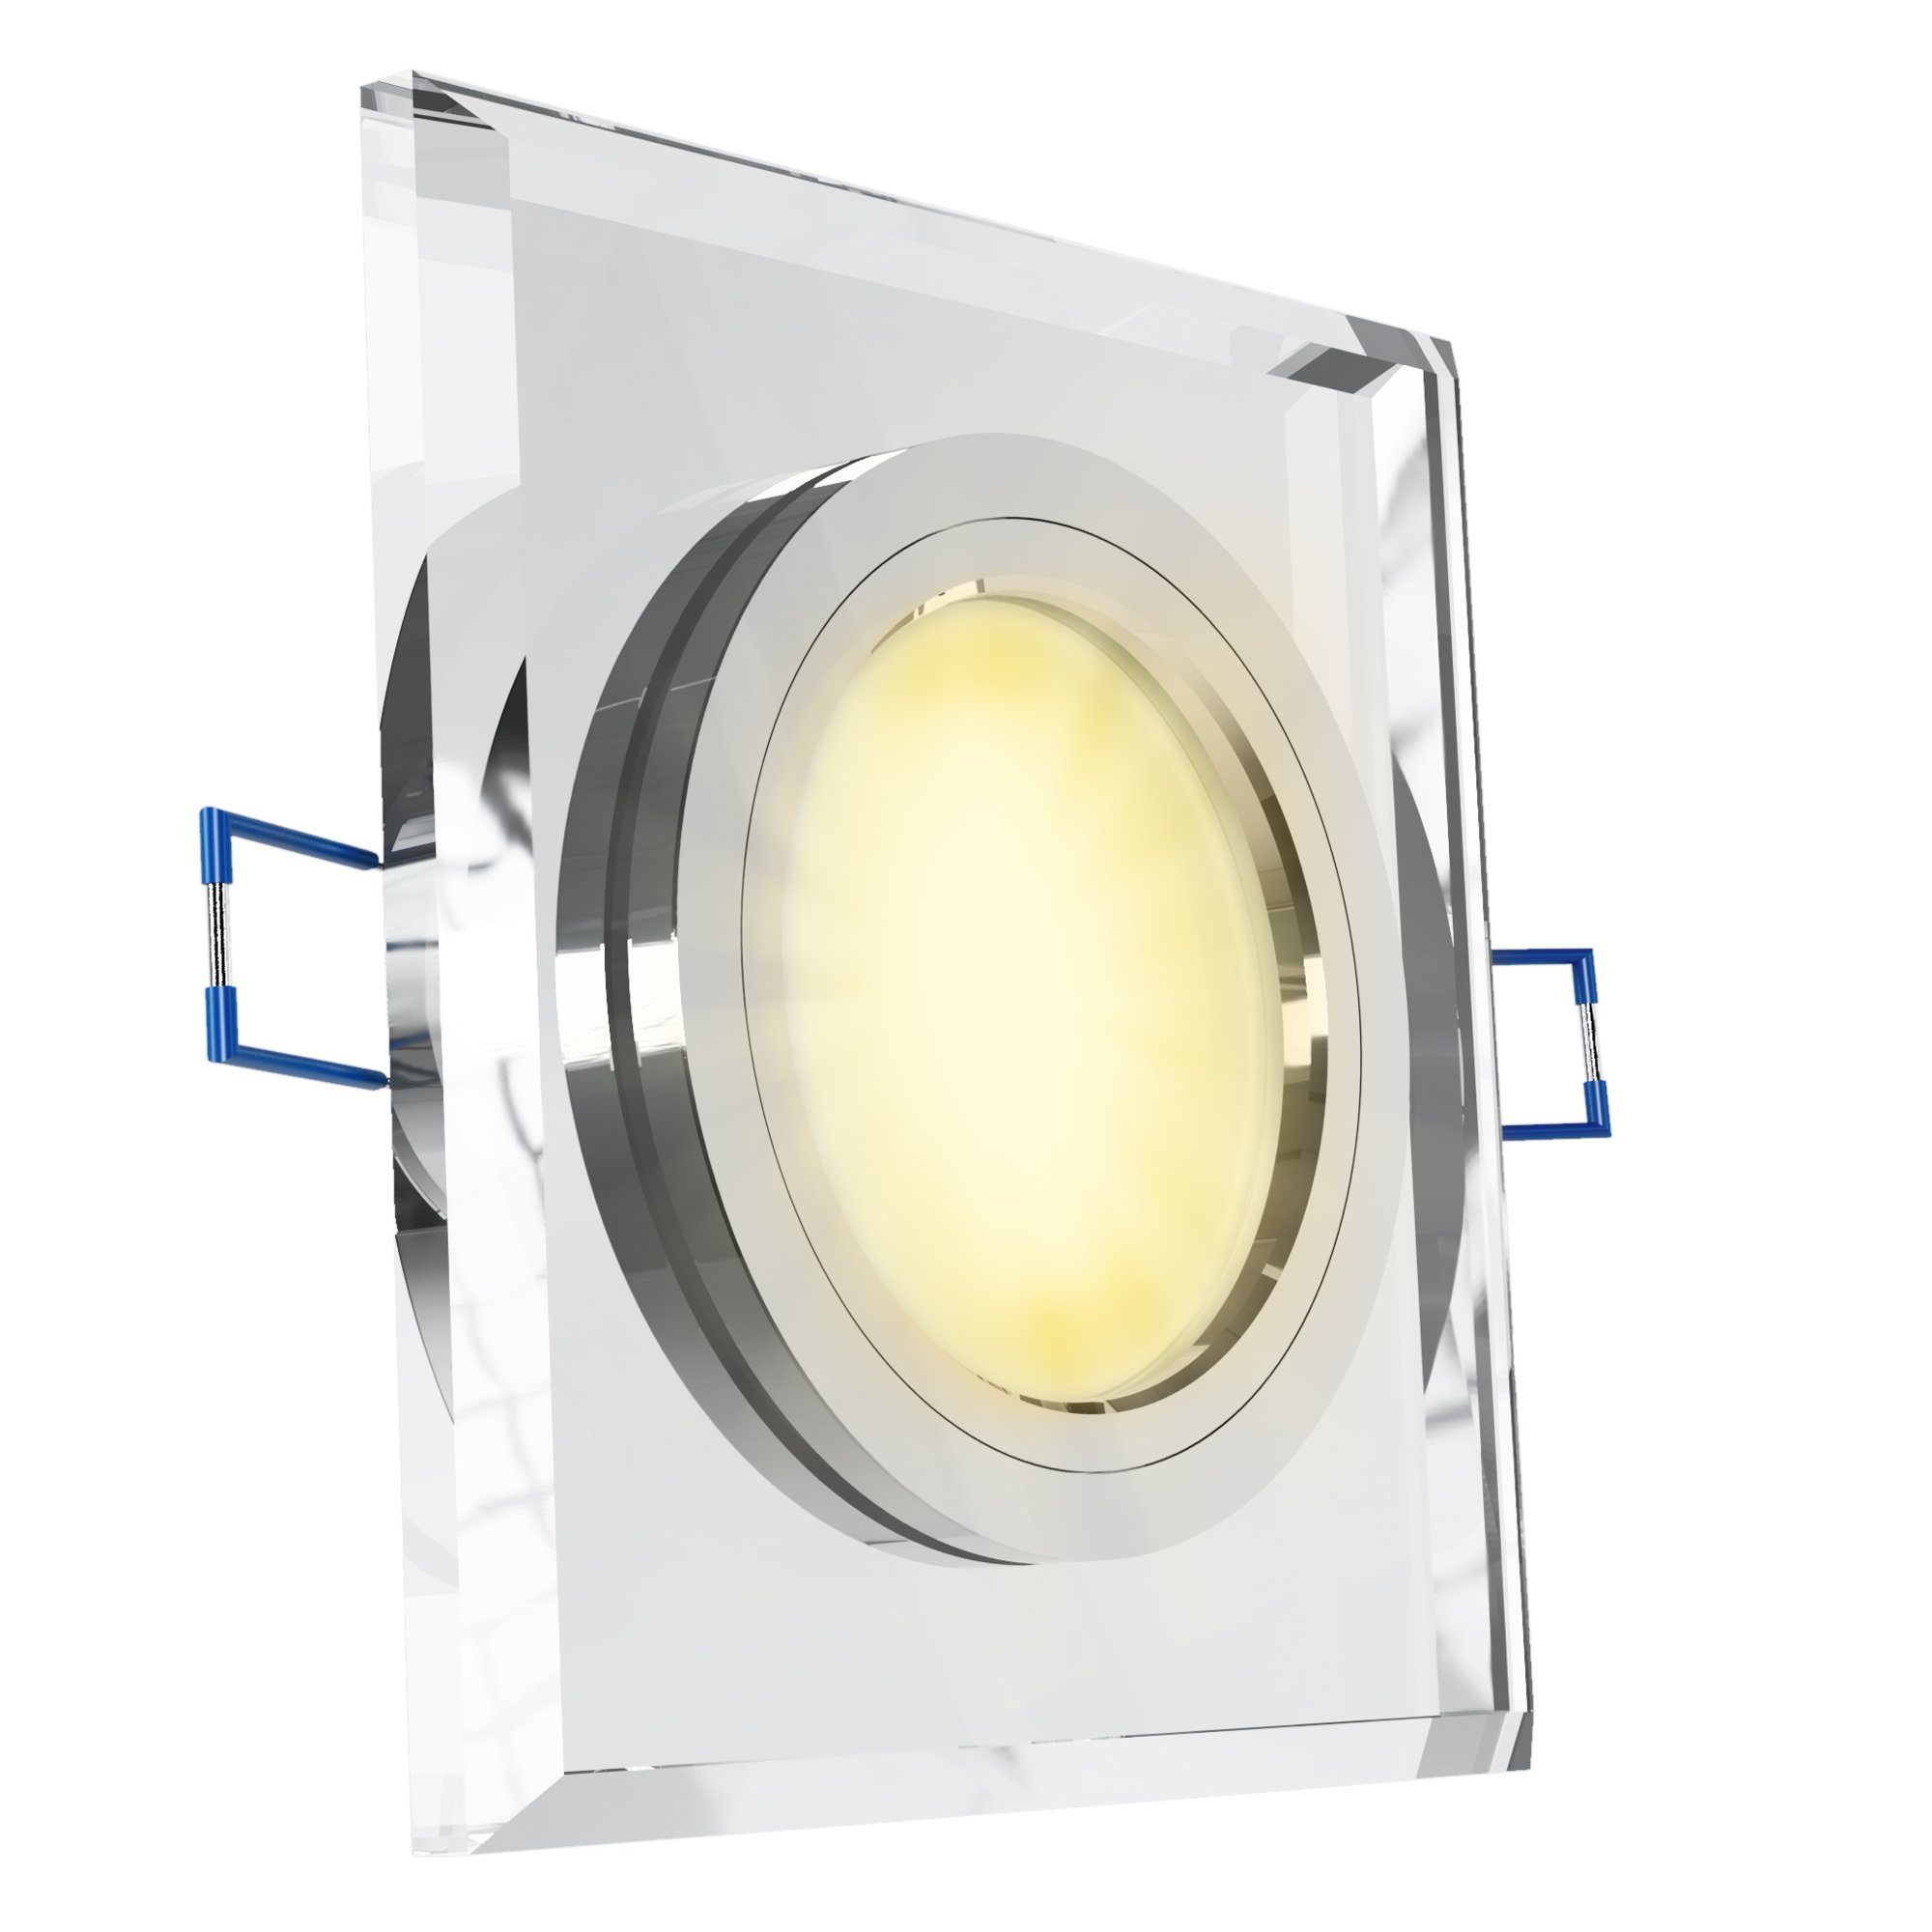 SSC-LUXon LED Einbaustrahler Flache Glas LED Einbaustrahler quadratisch klar mit LED-Modul, Warmweiß